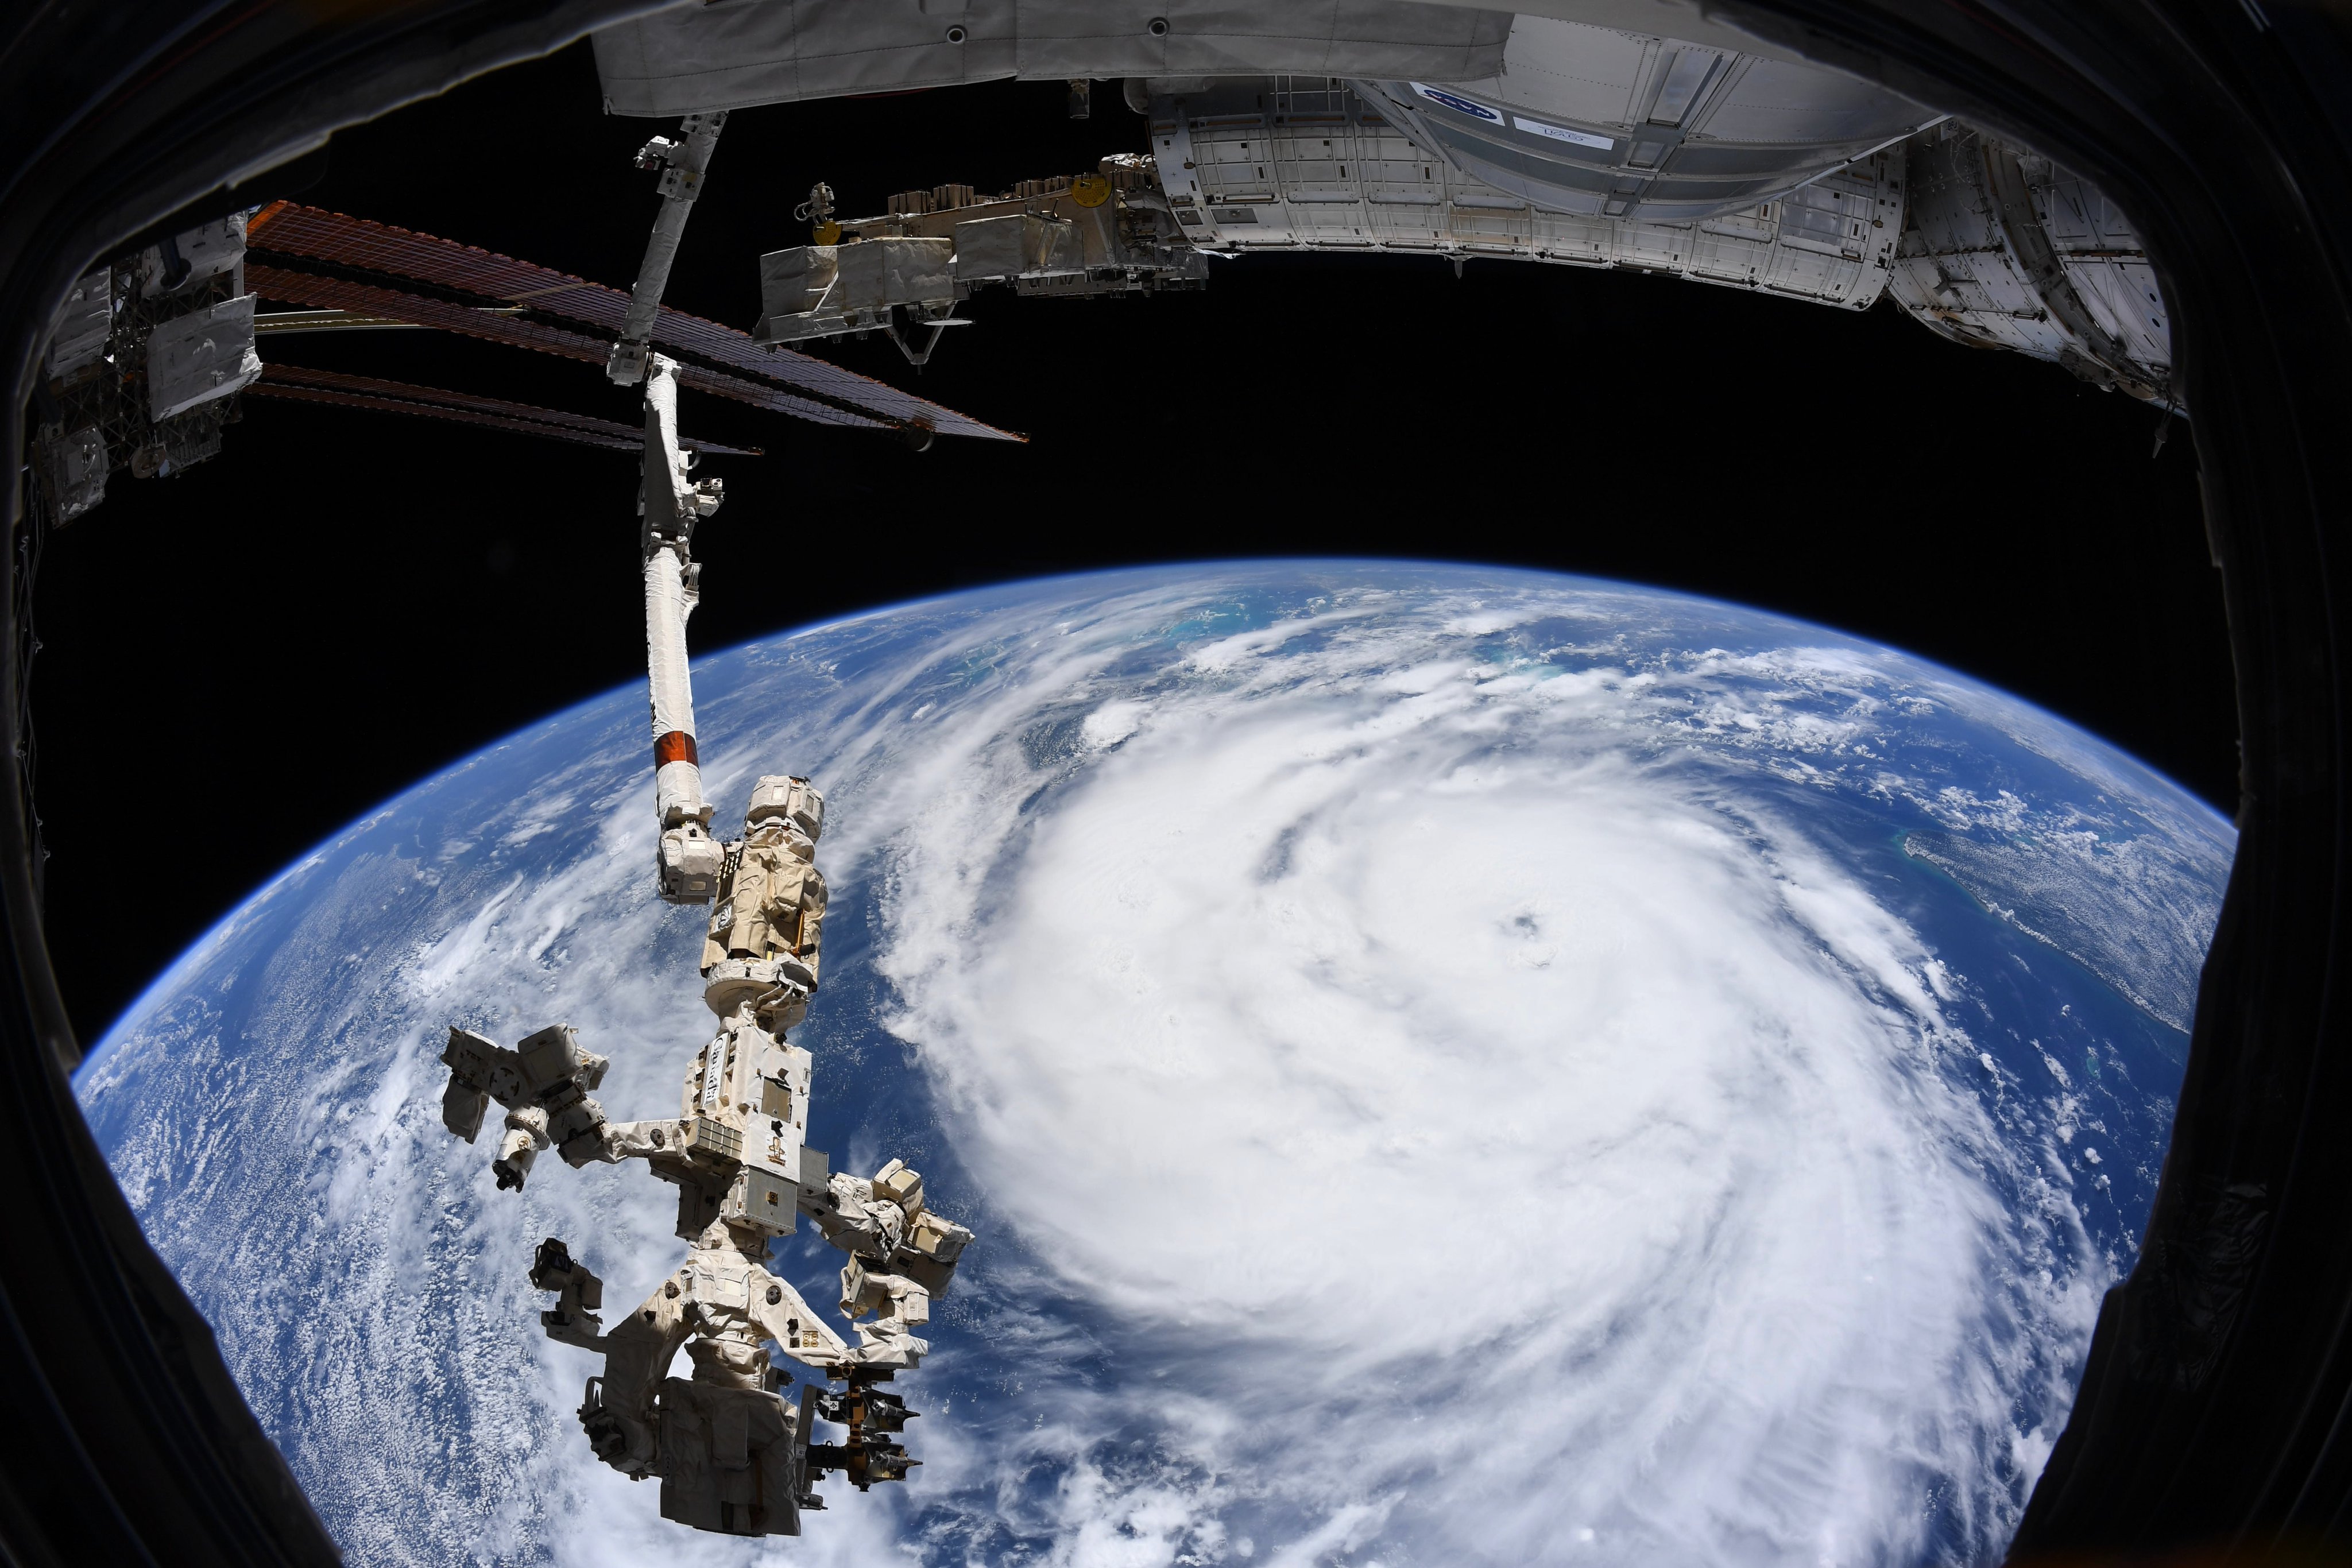 Ураган Ида развернул течение Миссисипи и обесточил Новый Орлеан – фото стихии из космоса